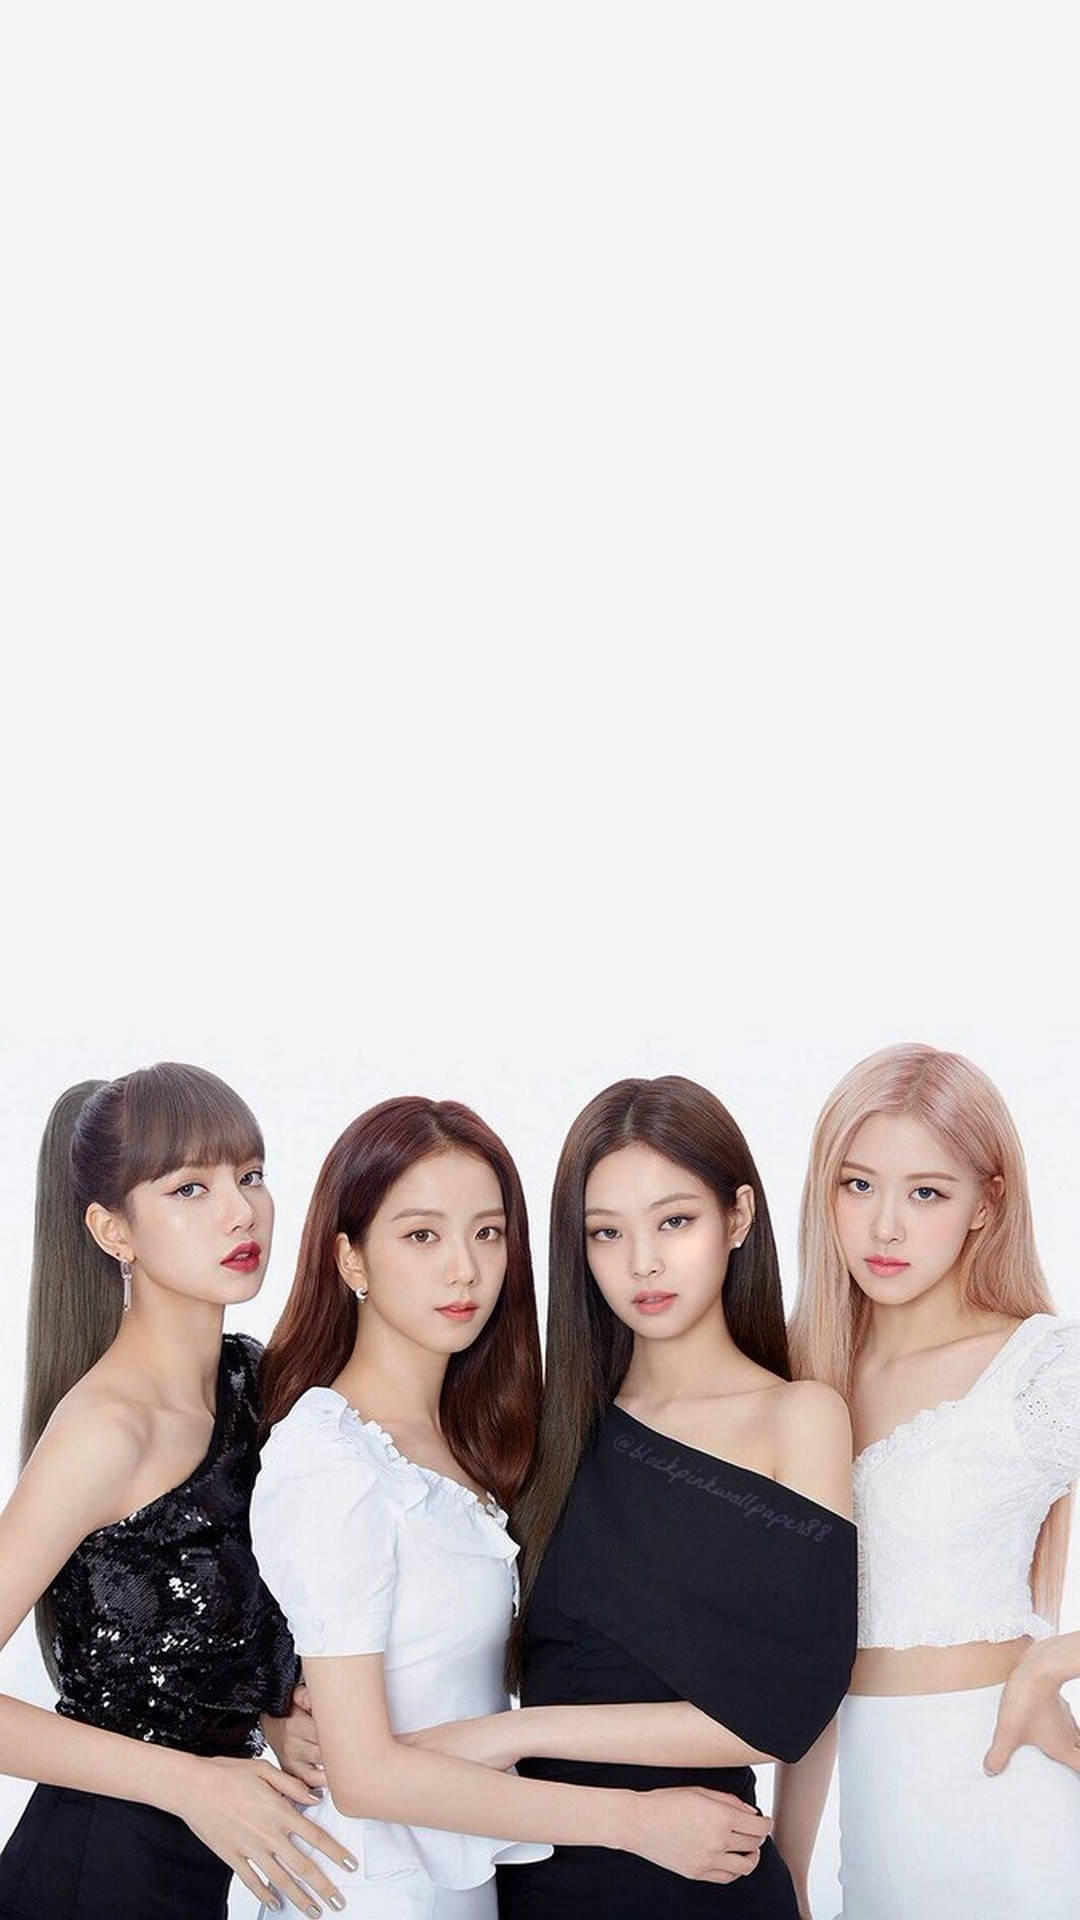 The Best HD Phone Blackpink Kpop Girl Group Wallpaper